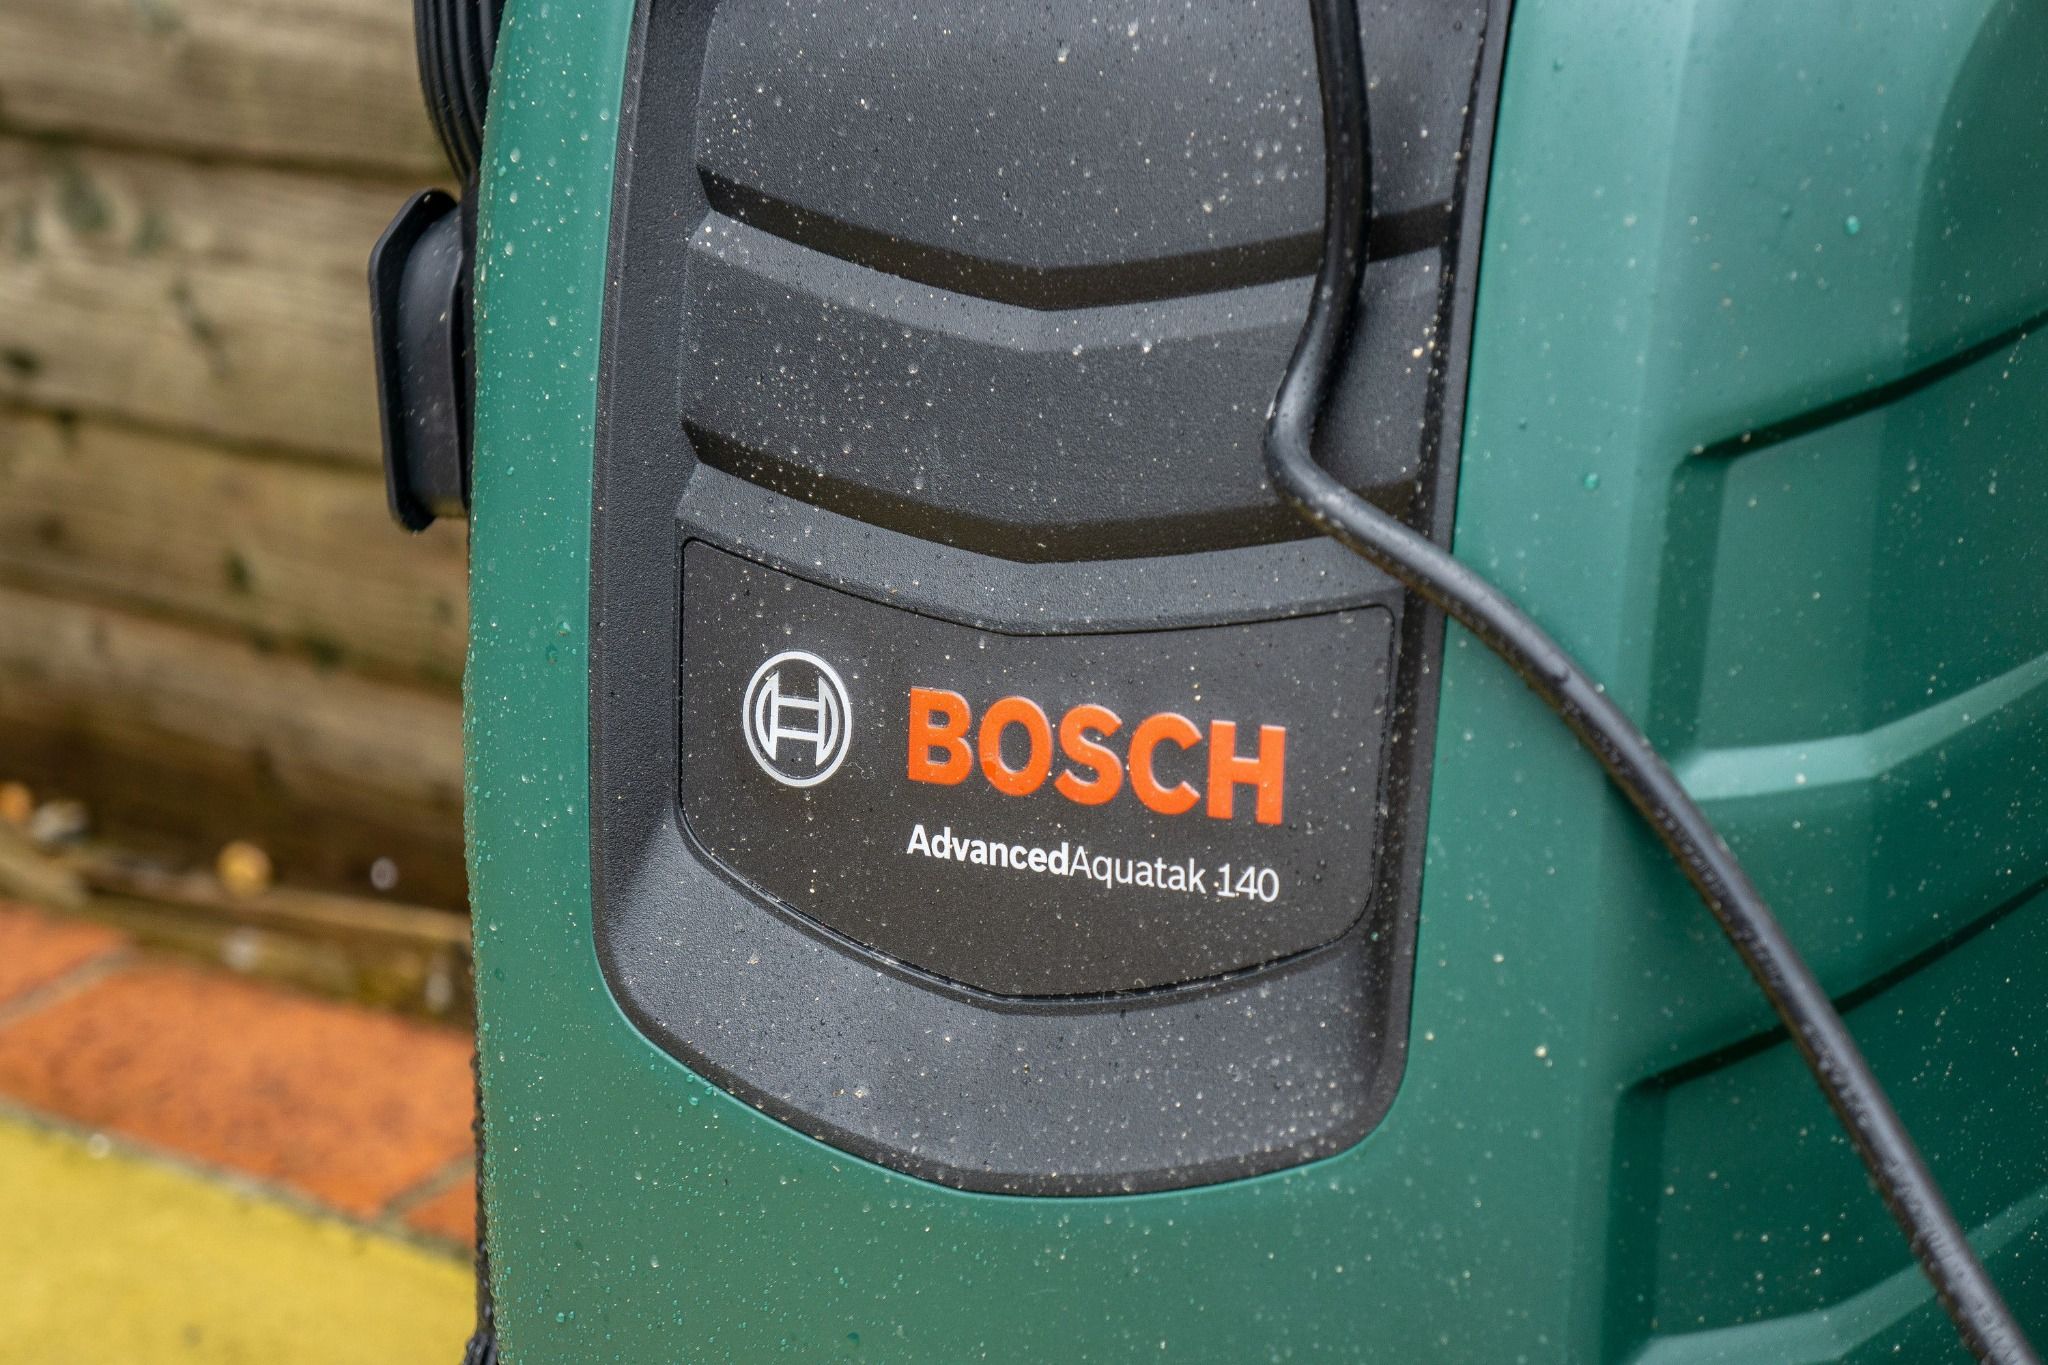 Bosch pressure washer